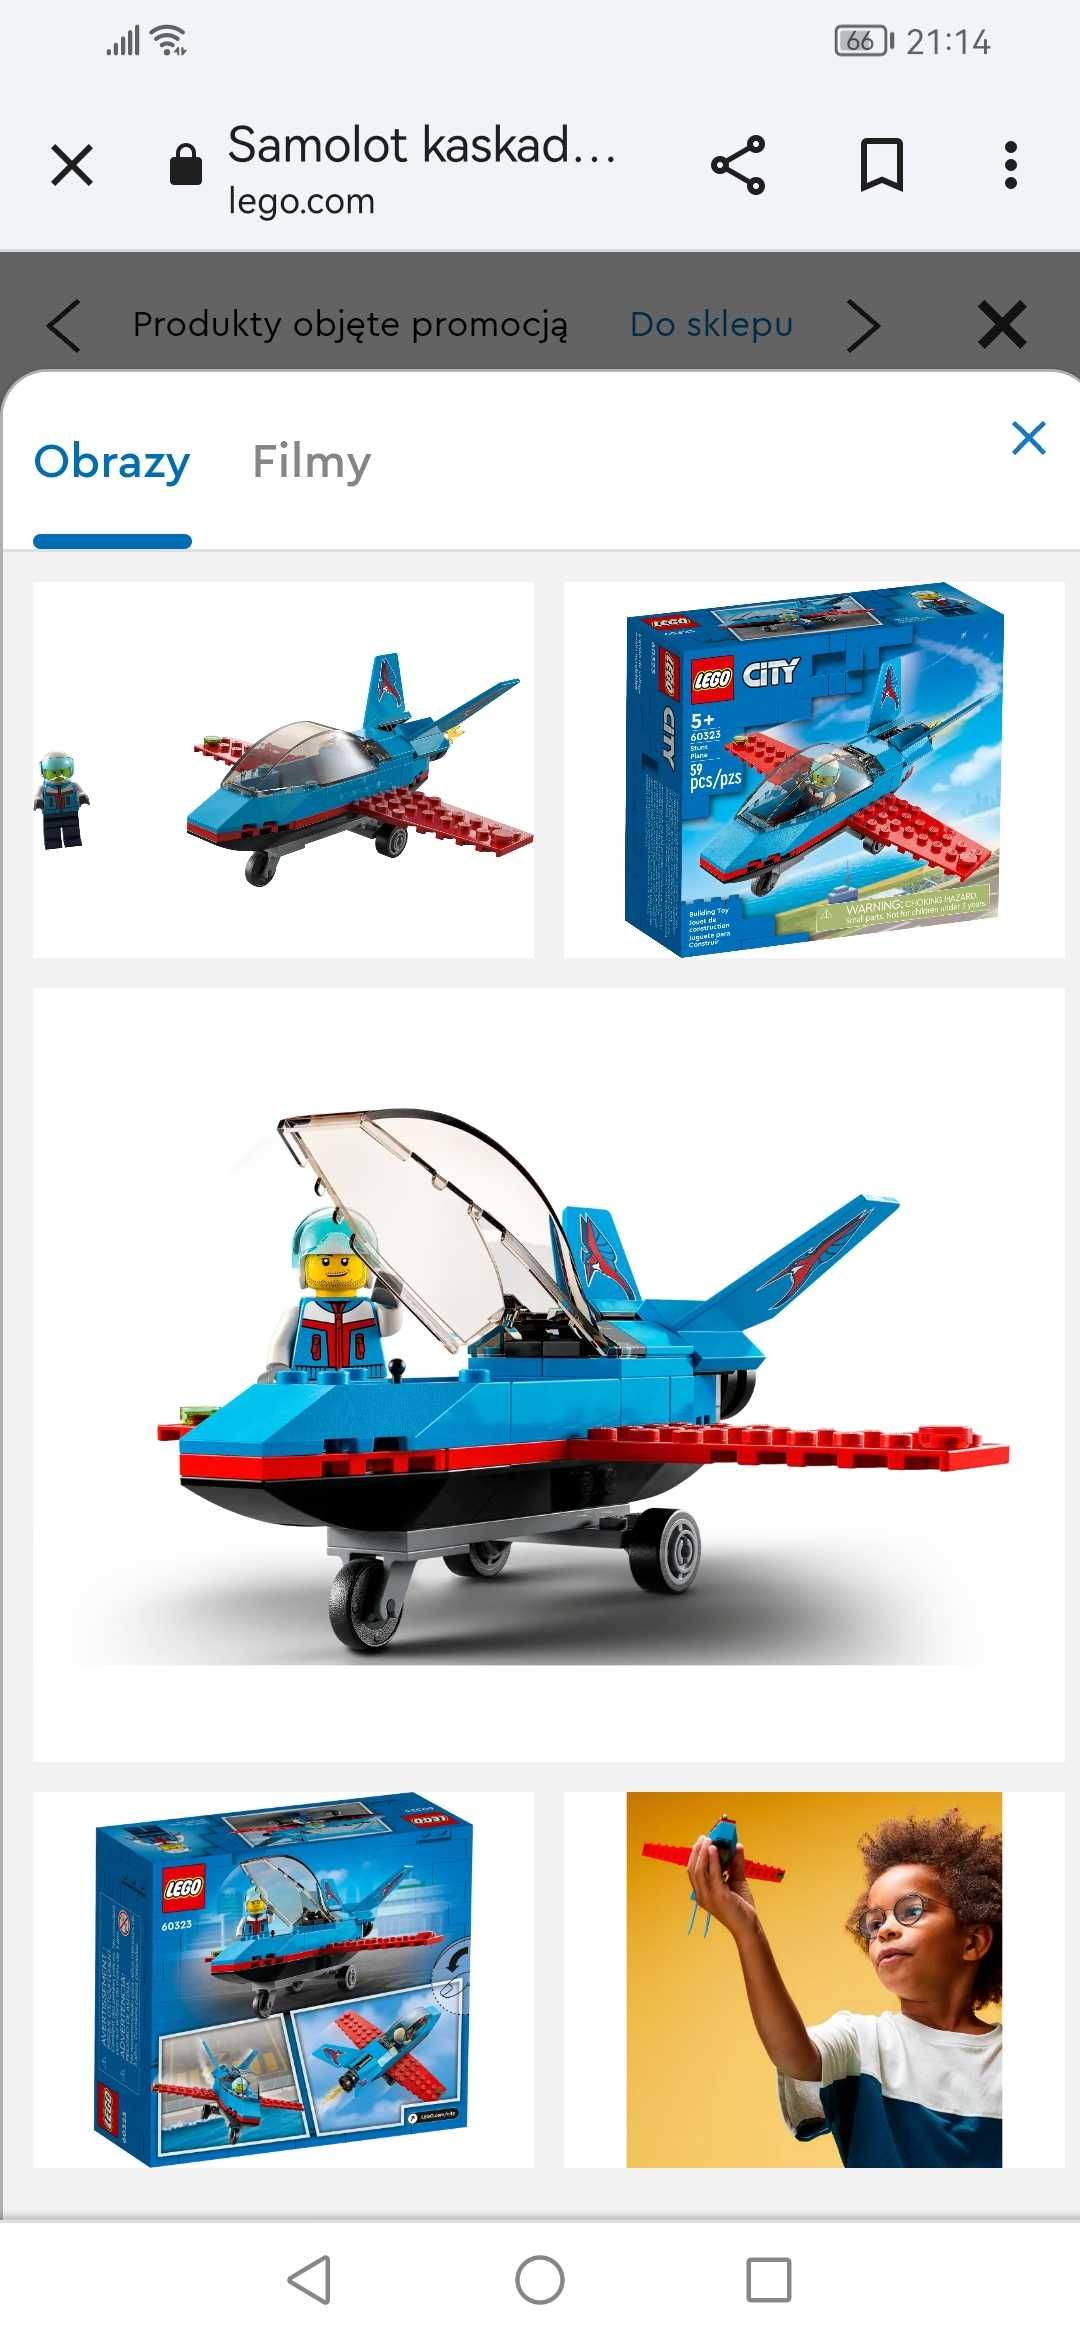 Lego city 60323 samolot kaskaderski